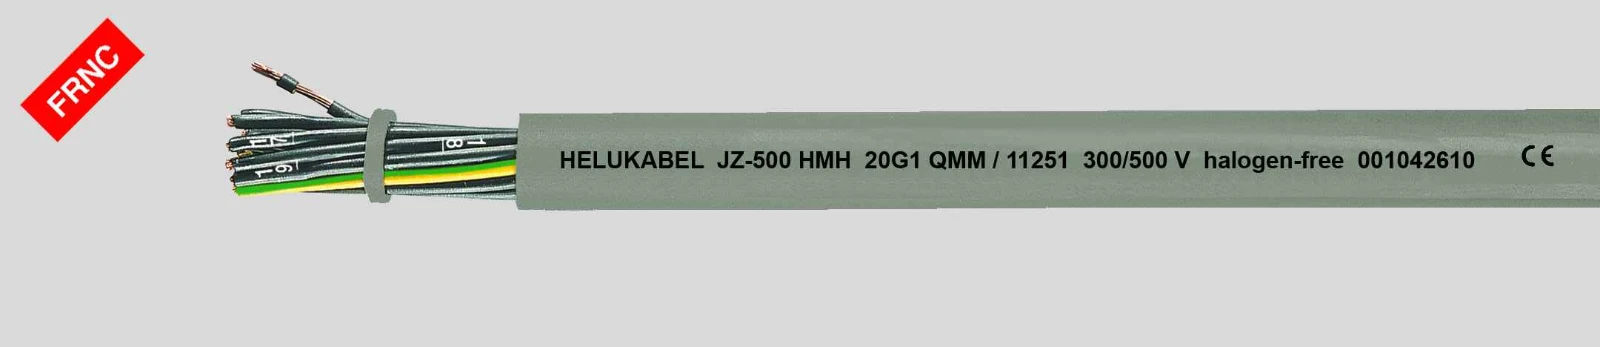 Helukabel Voedingskabel < 1 kV, voor beweegbare toepassingen JZ-500 HMH